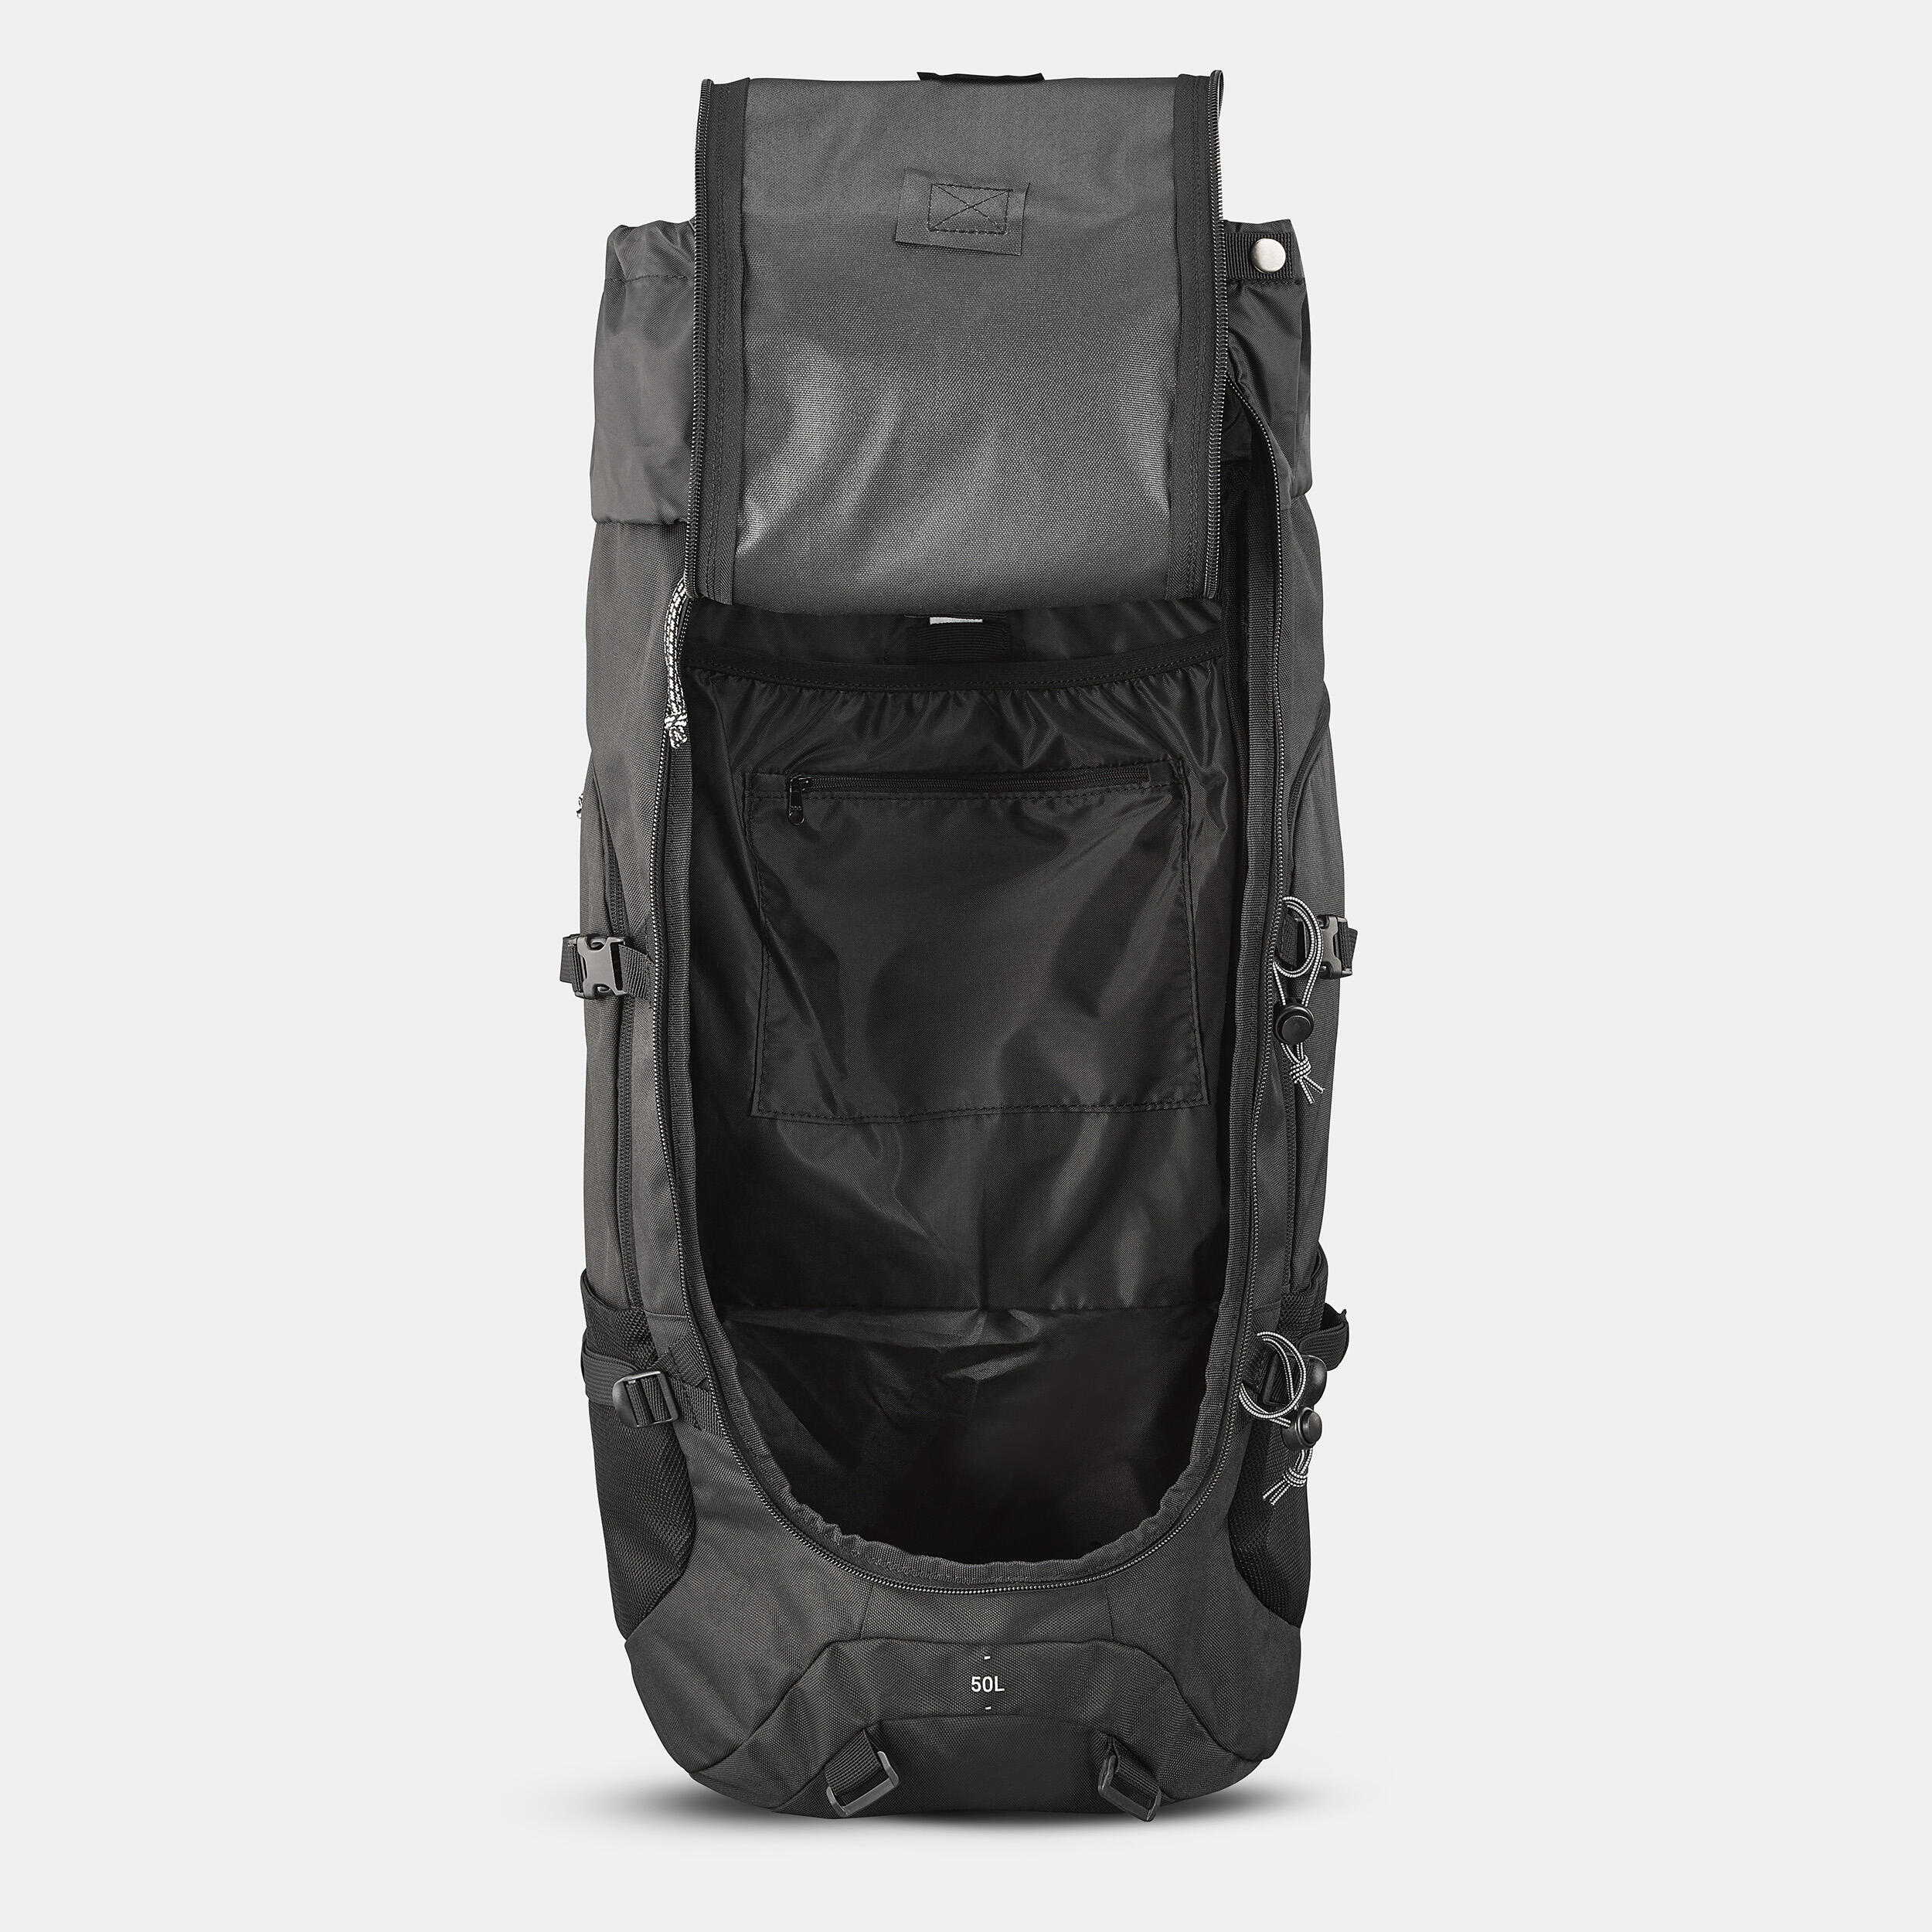 Hiking Backpack 50 L - Travel 100 Black - FORCLAZ